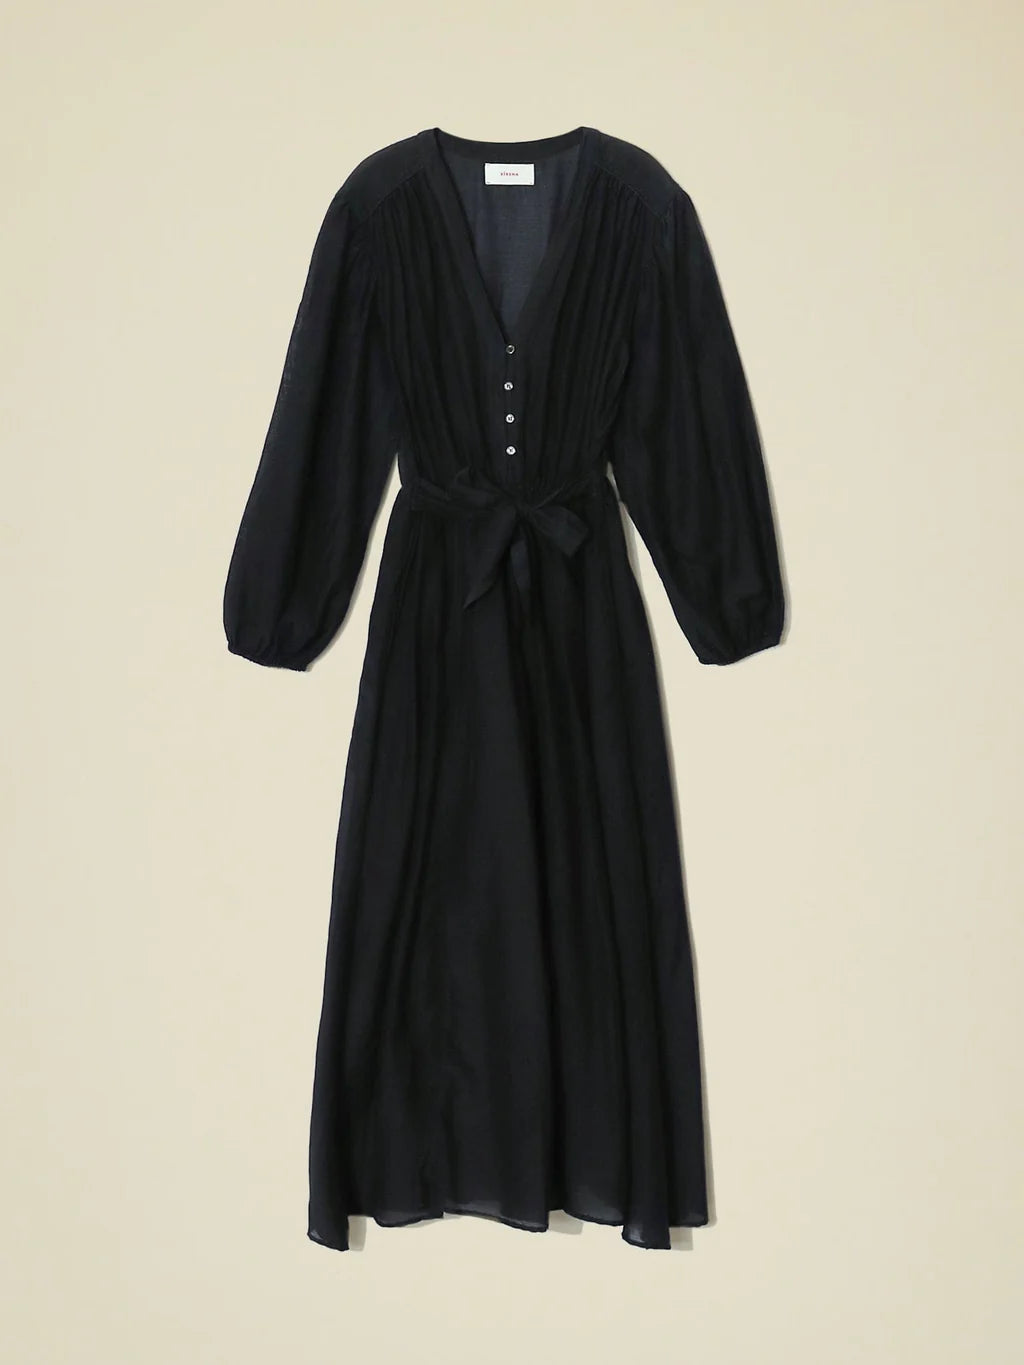 Hera Dress in Black